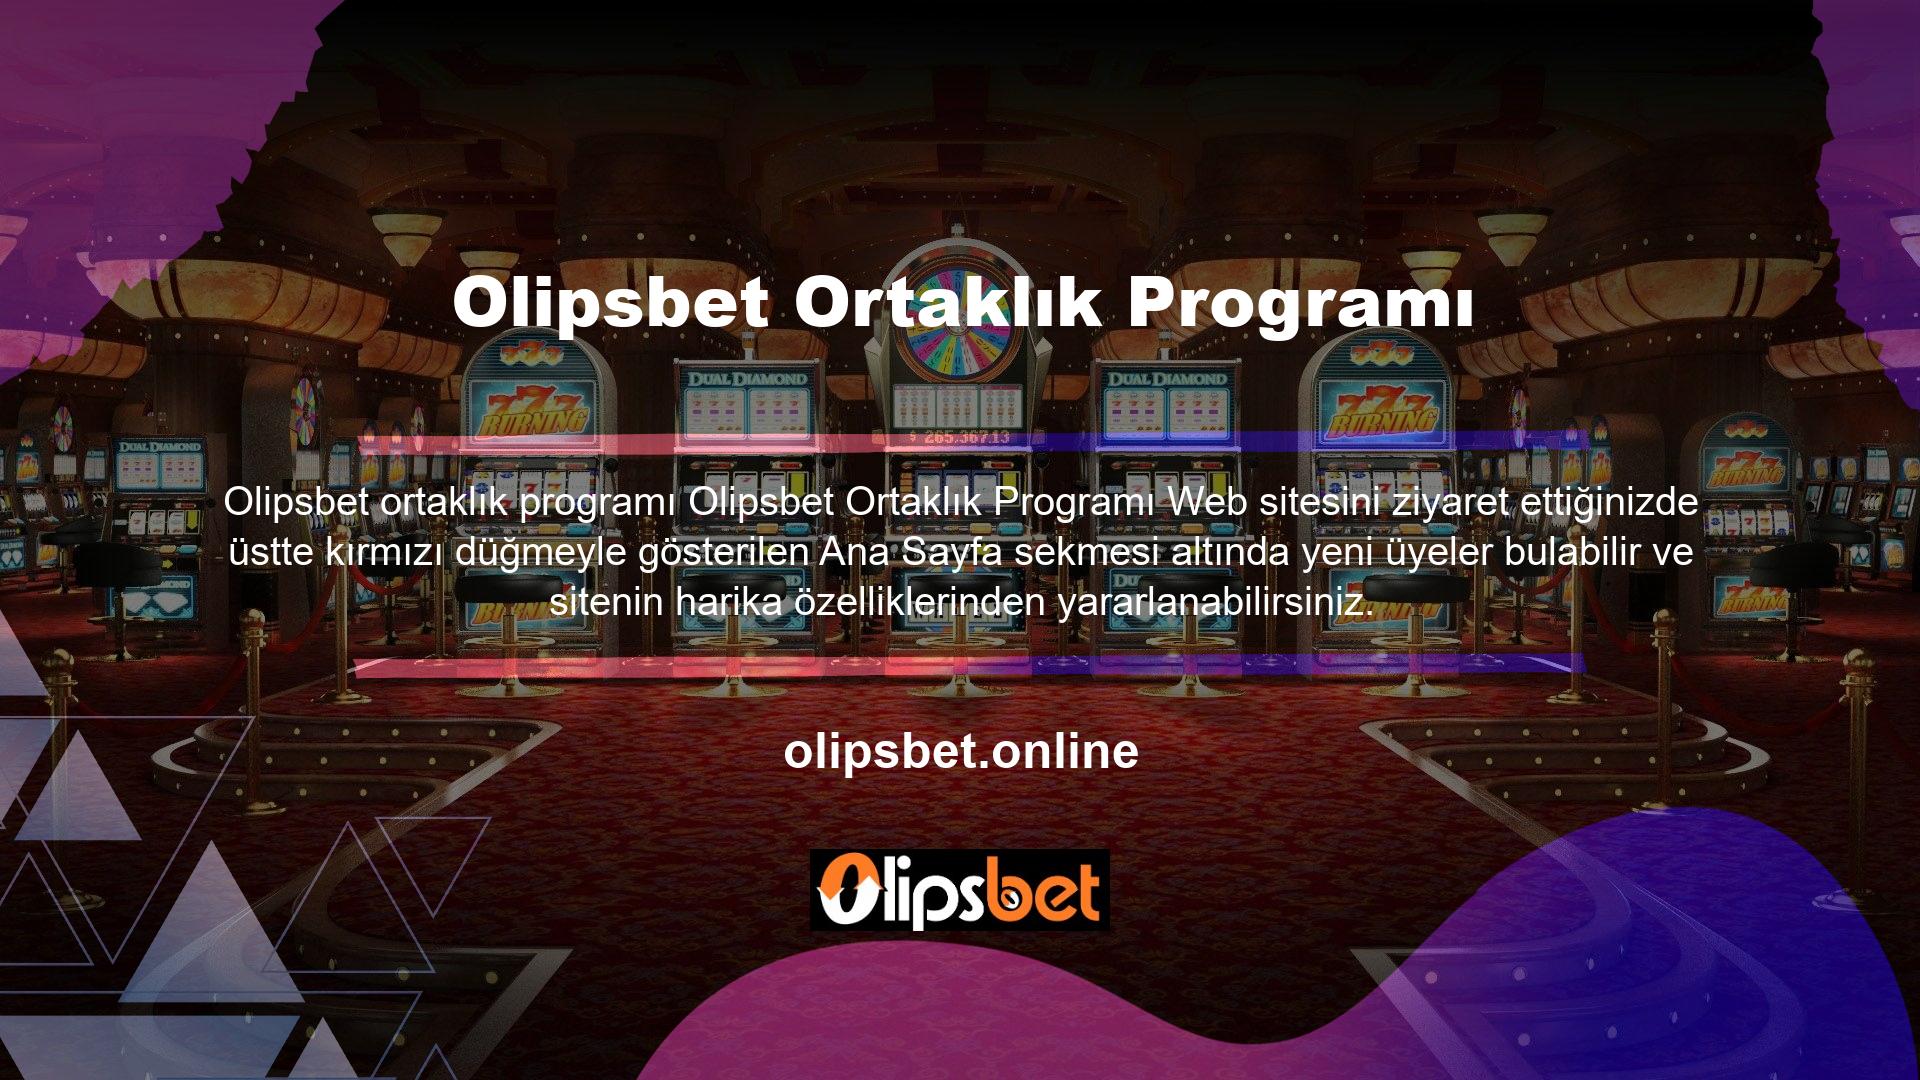 Olipsbet Affiliate Programı kayıt formunda istenen üyelik kayıt bilgilerinin doğru bir şekilde doldurularak siteye gönderilmesi gerekmektedir